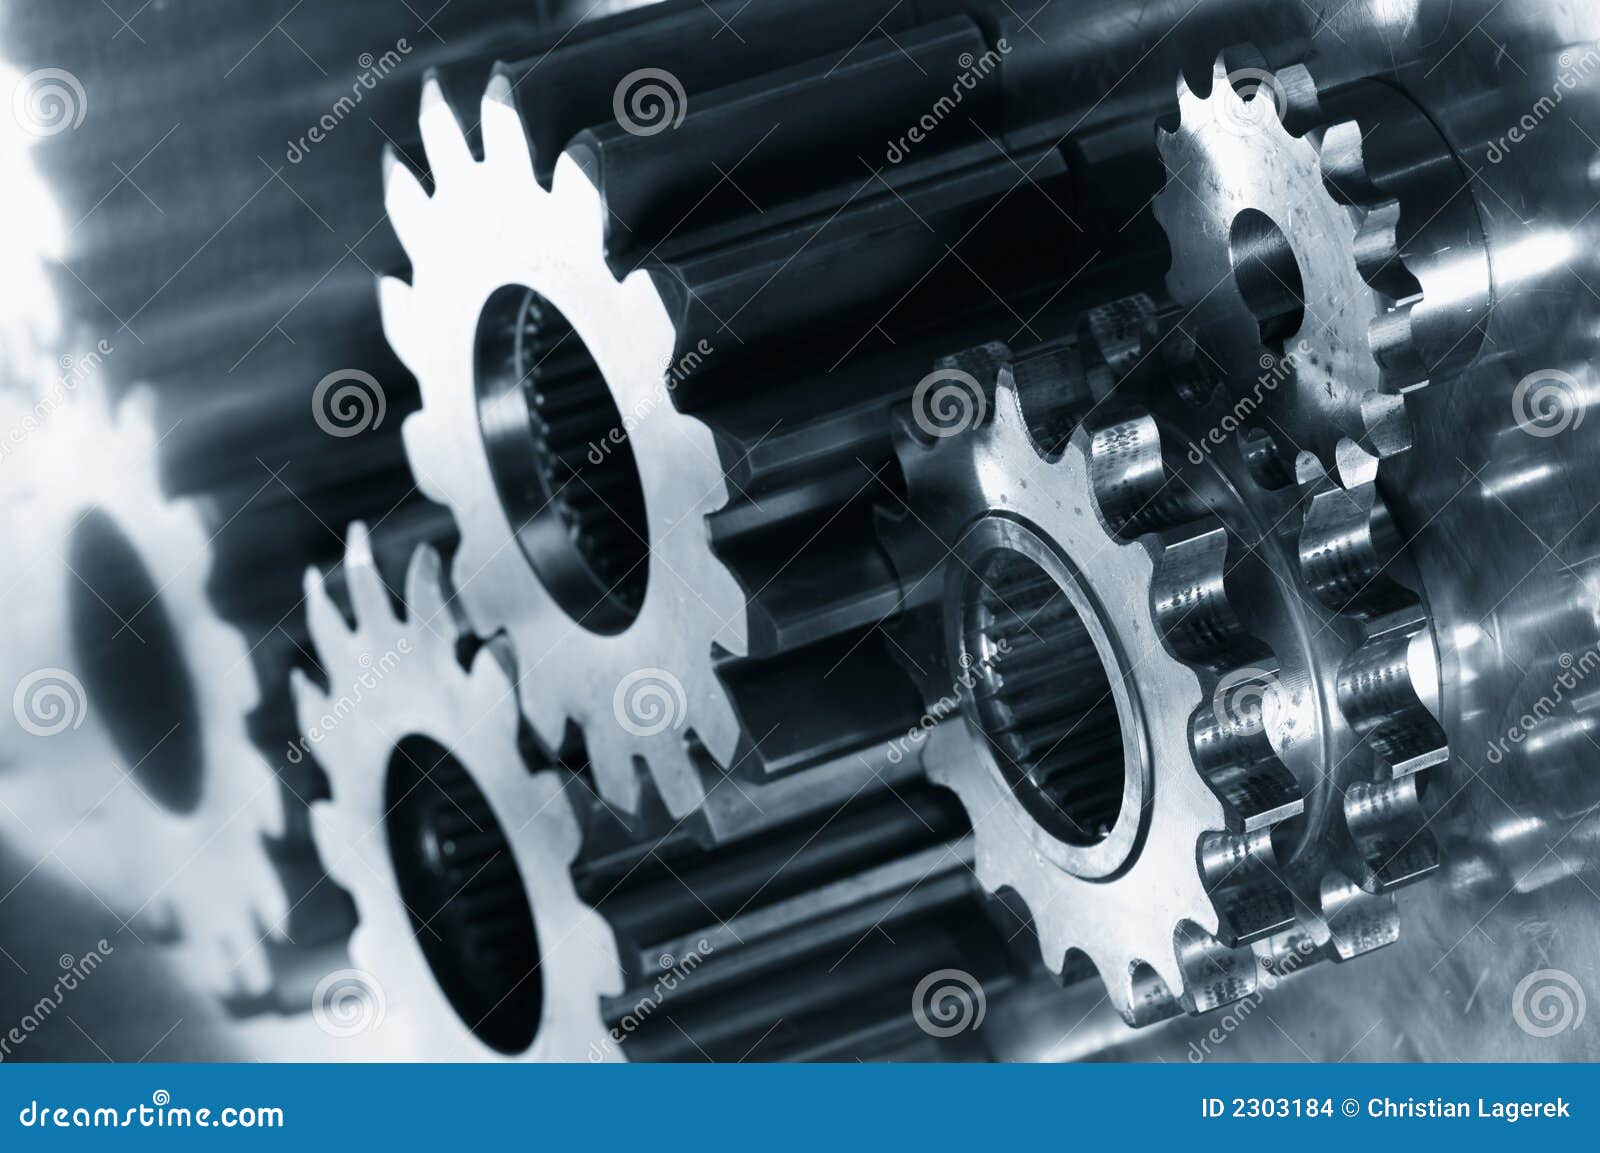 gear-mechanism in dark blue